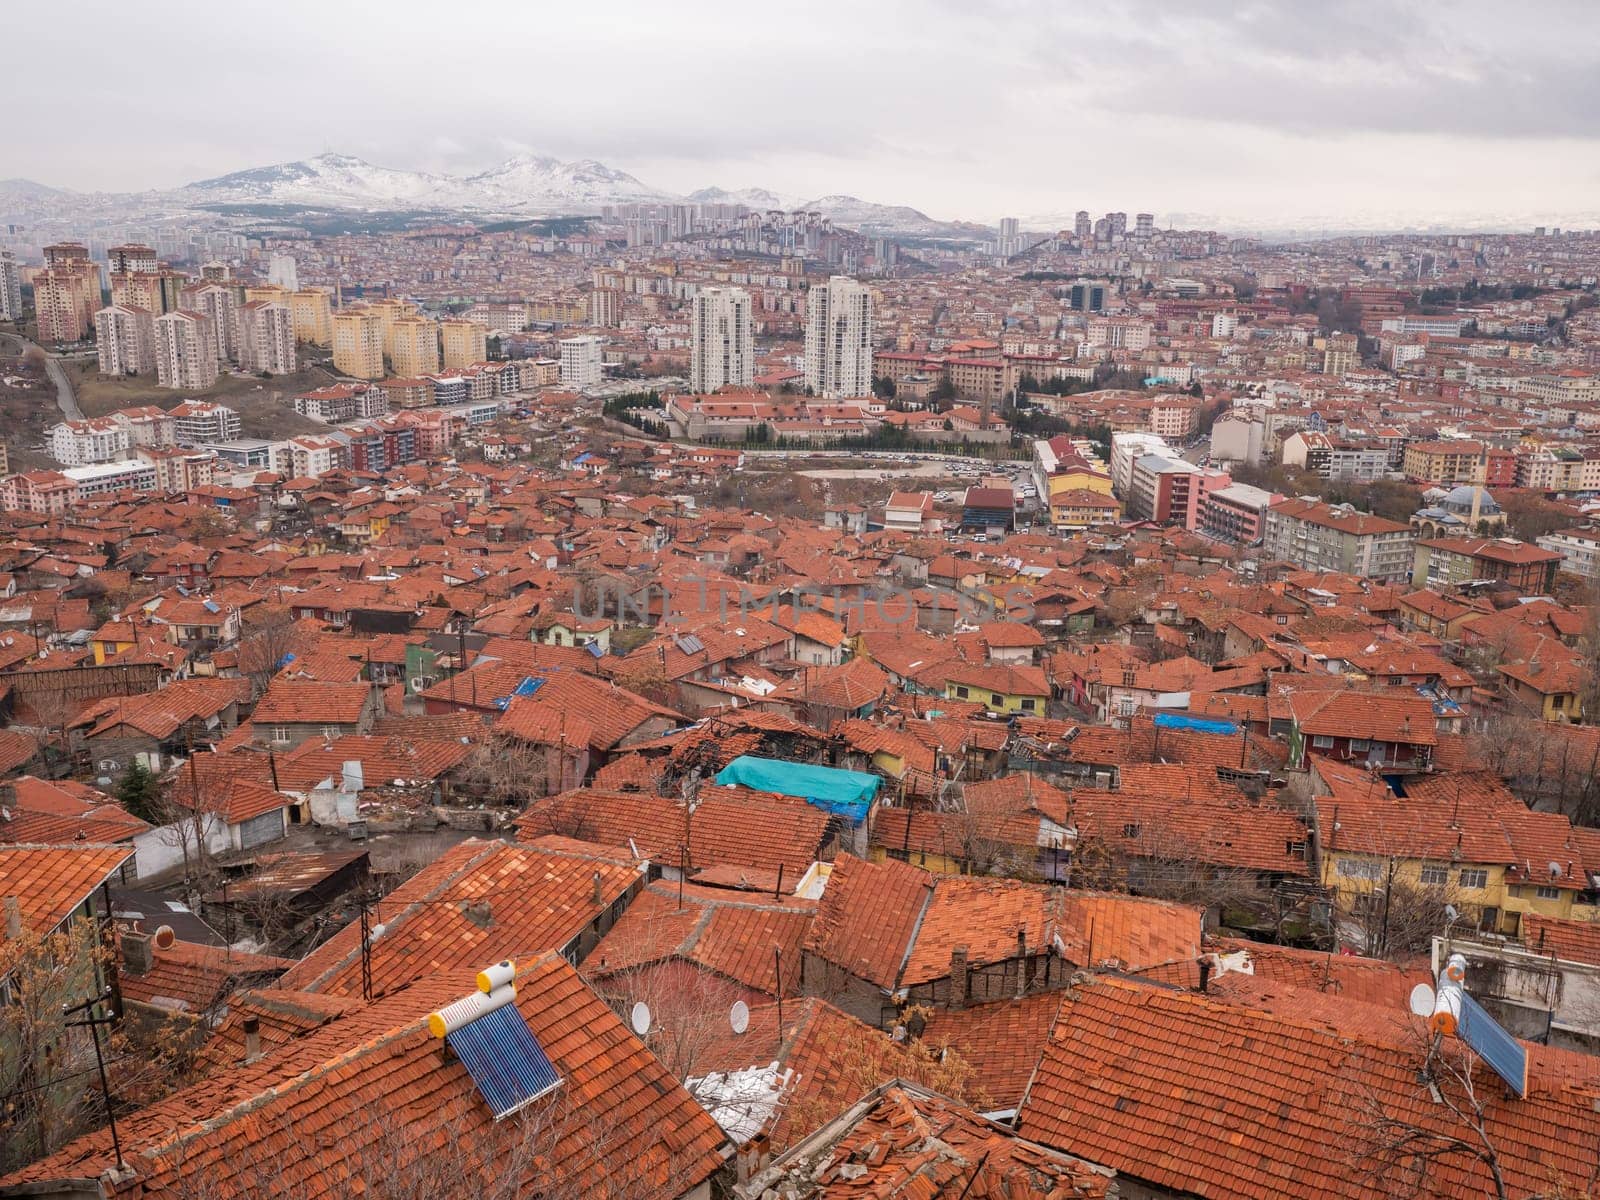 Ankara, Turkey - January 9, 2021: View of the Turkish capital Ankara from the castle on top. by DovidPro